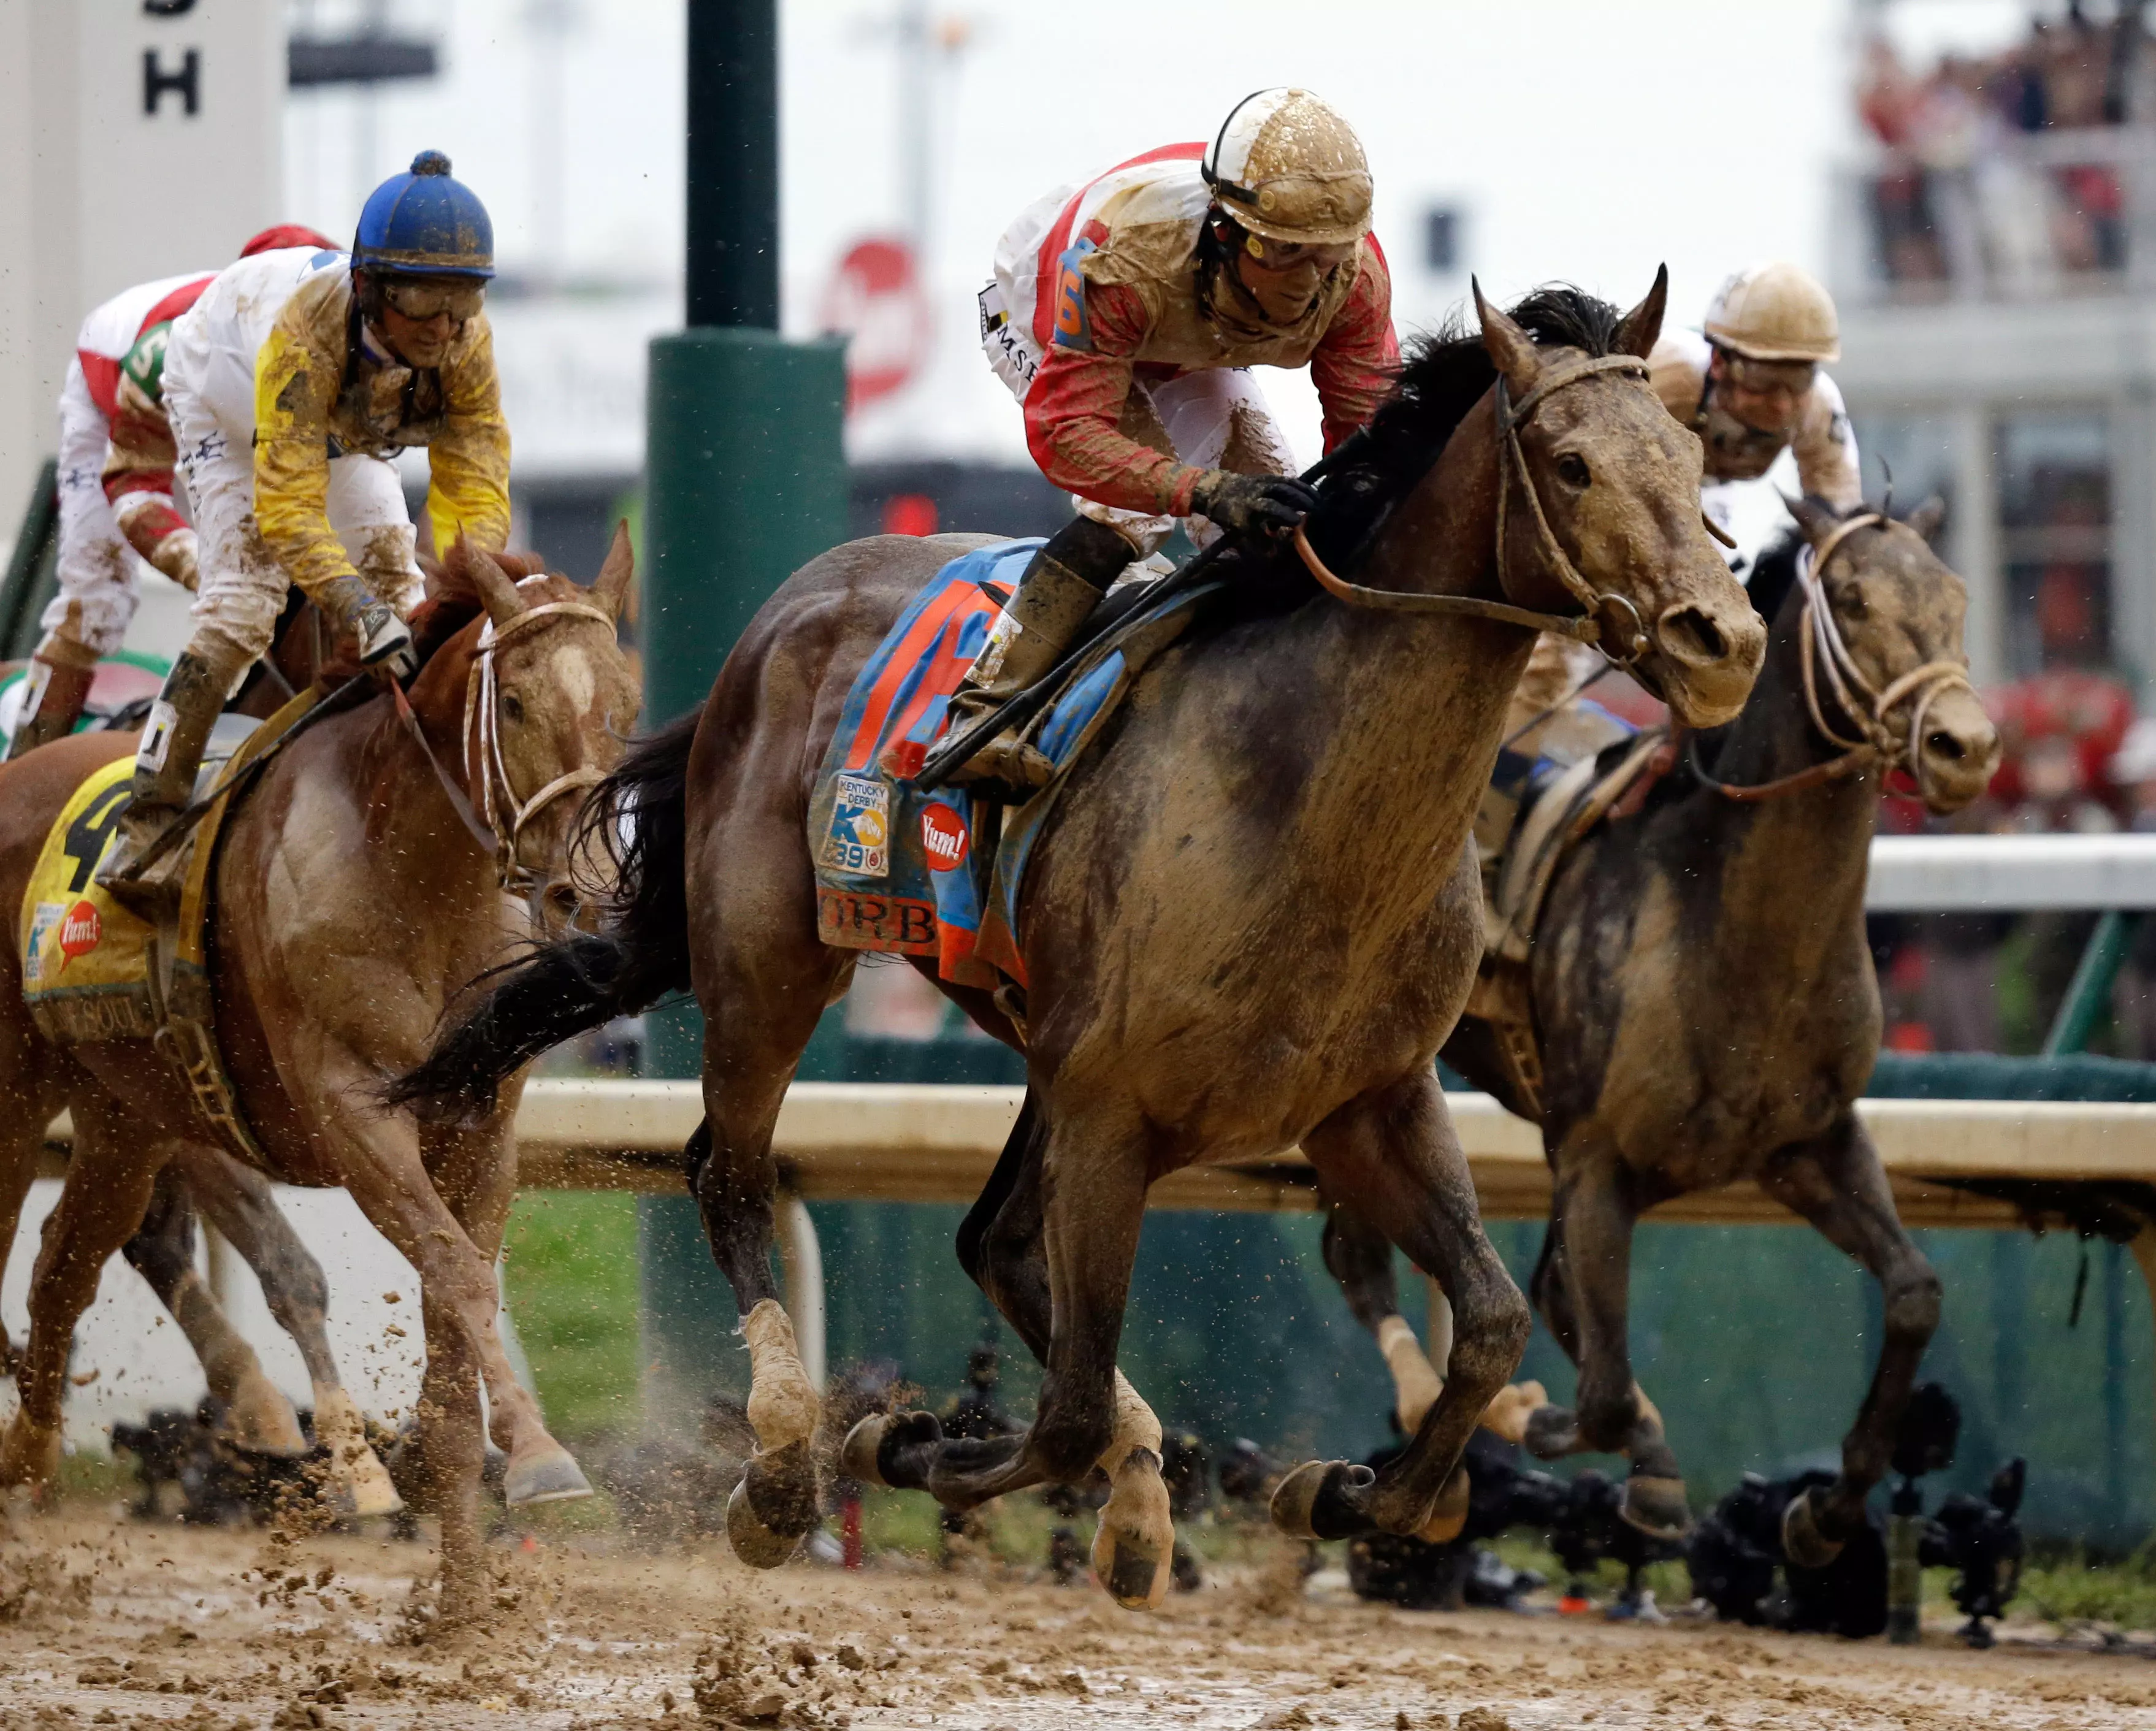 מדי שנה מתים למעלה מ-1,200 סוסים במסלולי המרוצים בארה"ב. מרוץ ה"קנטאקי דרבי" במאי האחרון